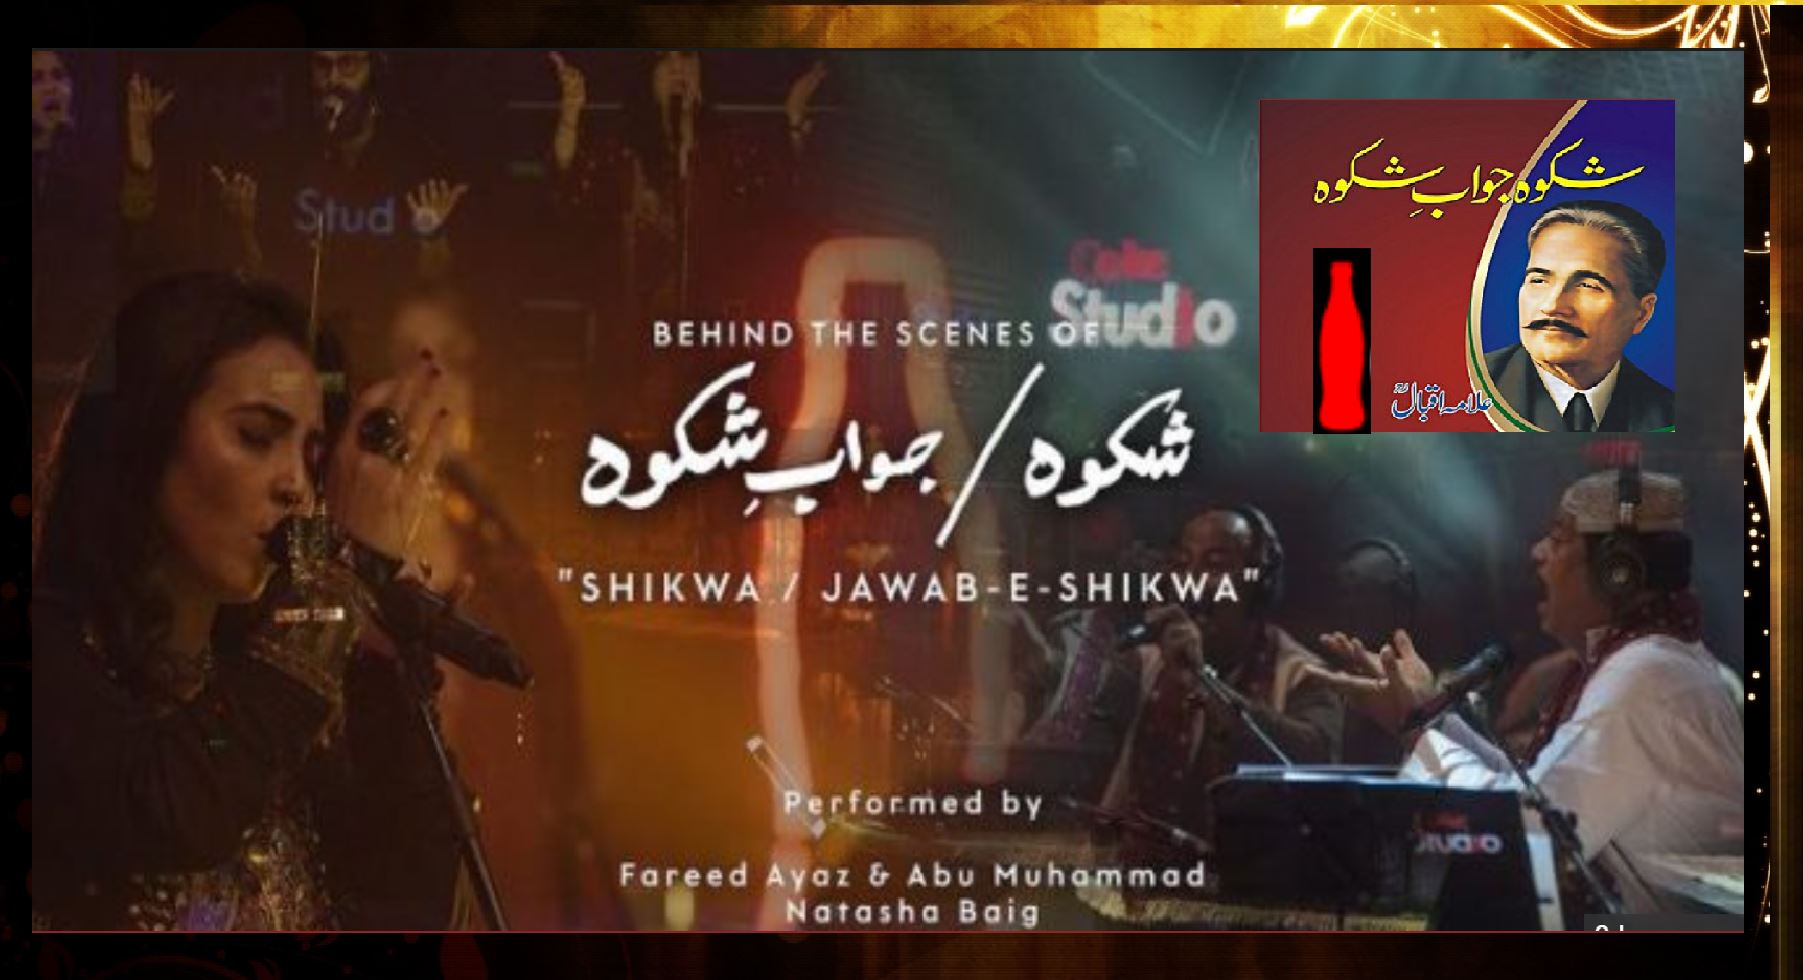 Shikwa Jawab-e-Shikwa